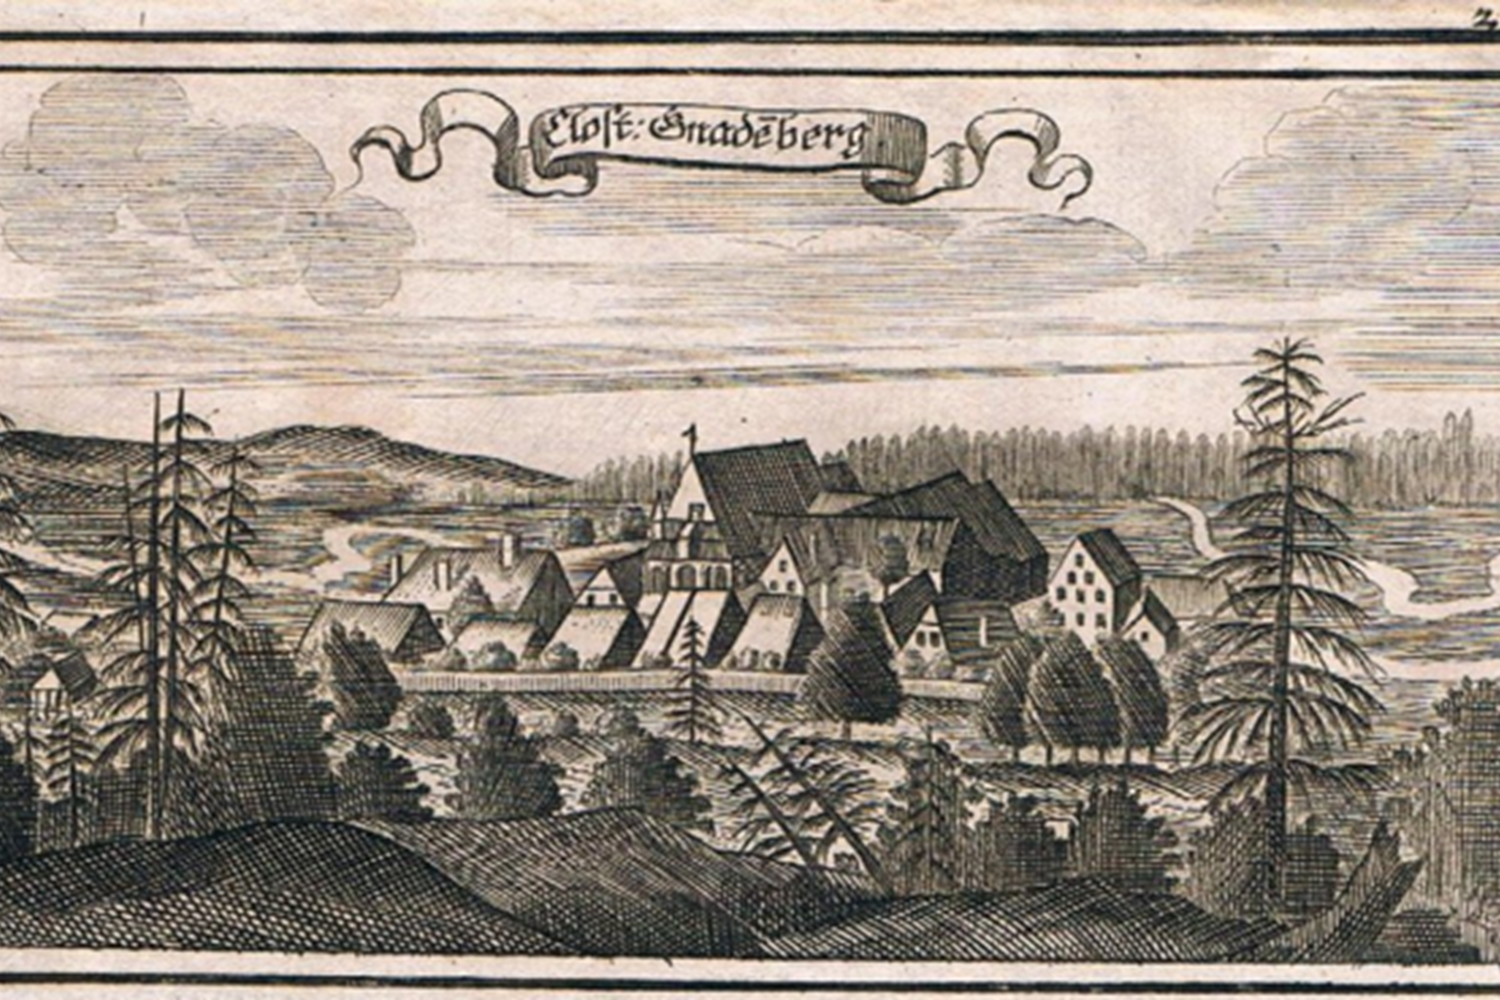 Kloster Gnadenberg bei Berg, Landkreis Neumarkt in der Oberpfalz; 
Stich des Klosters aus dem 